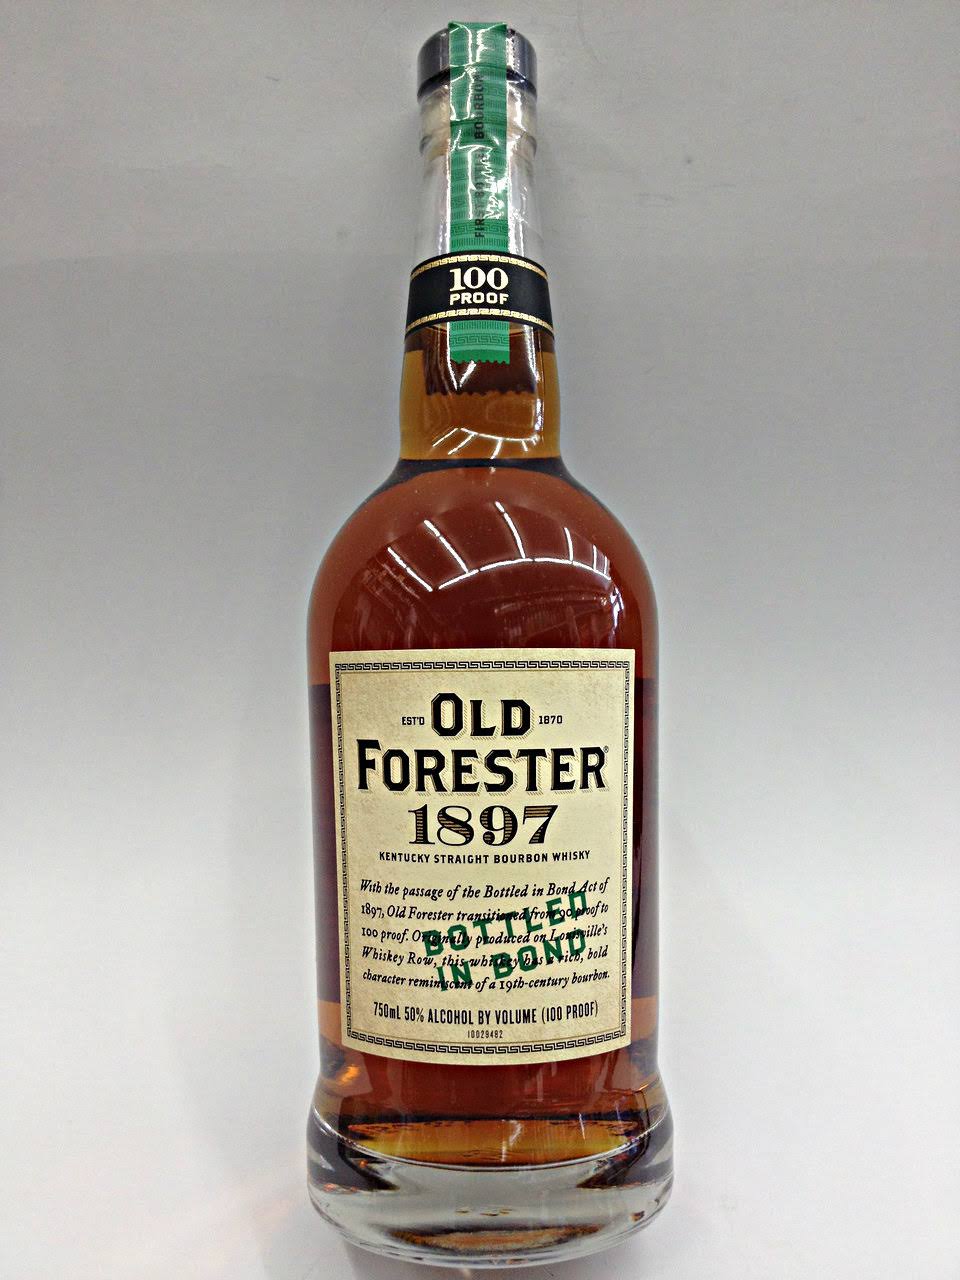 Old Forester 1897 Kentucky Straight Bourbon Whisky - 750 ml bottle